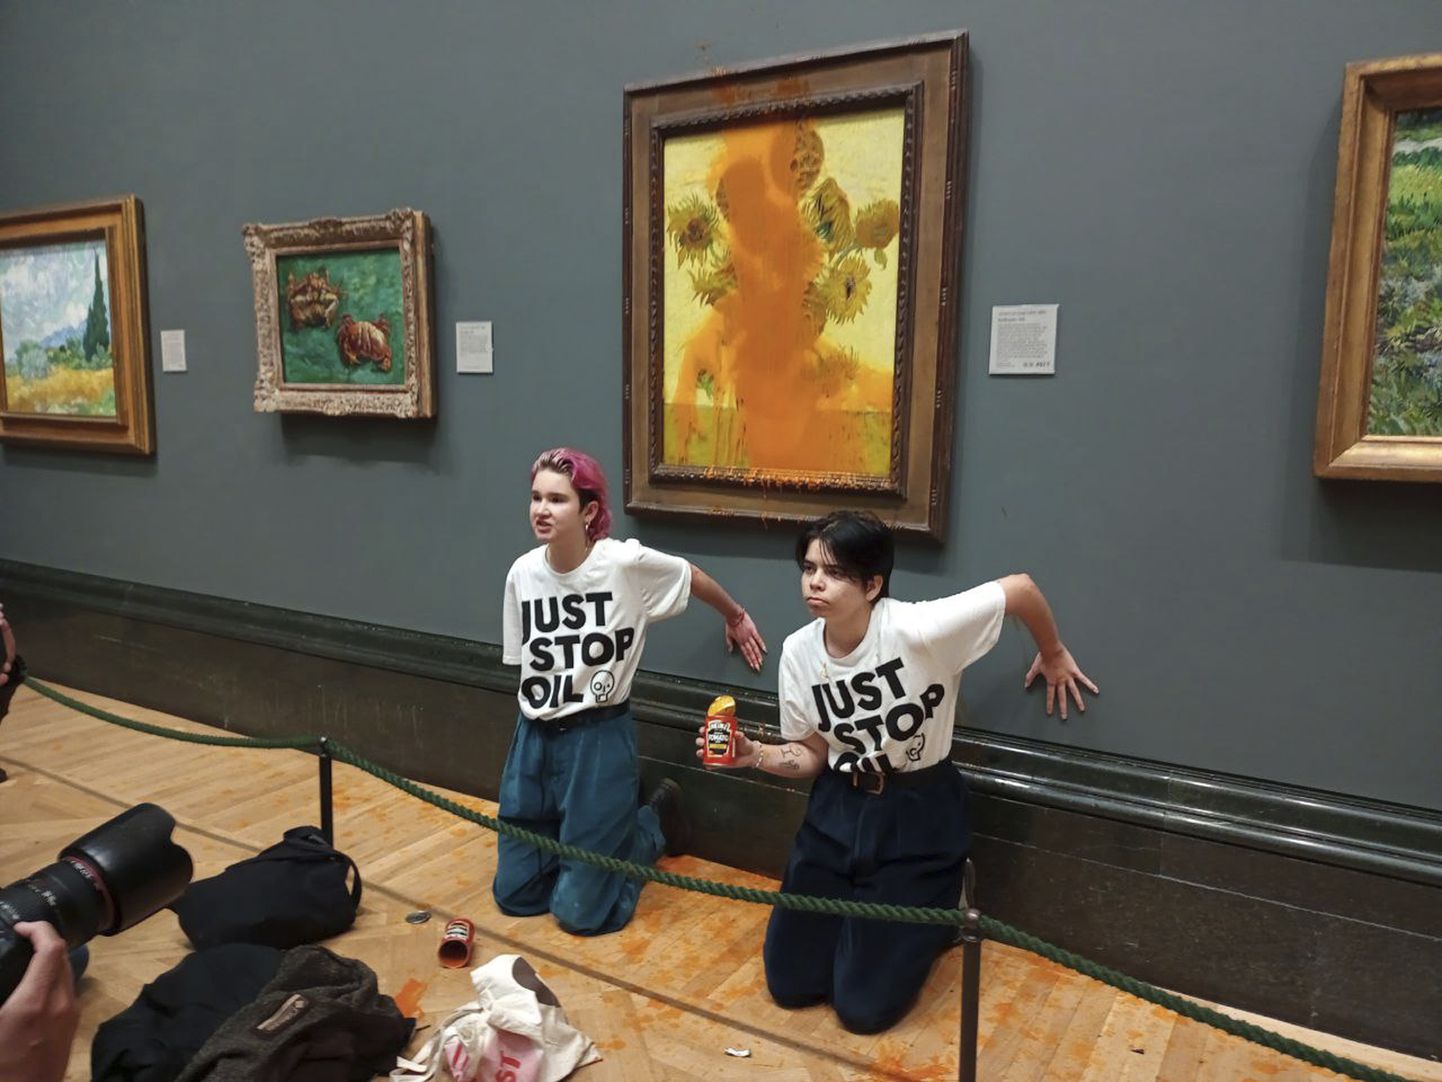 Aktīvistu grupas "Just Stop Oil" izdotā izdales fotogrāfija, kurā redzamas divas protestētājas, kuras Londonas Nacionālajā galerijā apmētājušas Vincenta van Goga slaveno 1888. gada darbu "Saulespuķes".